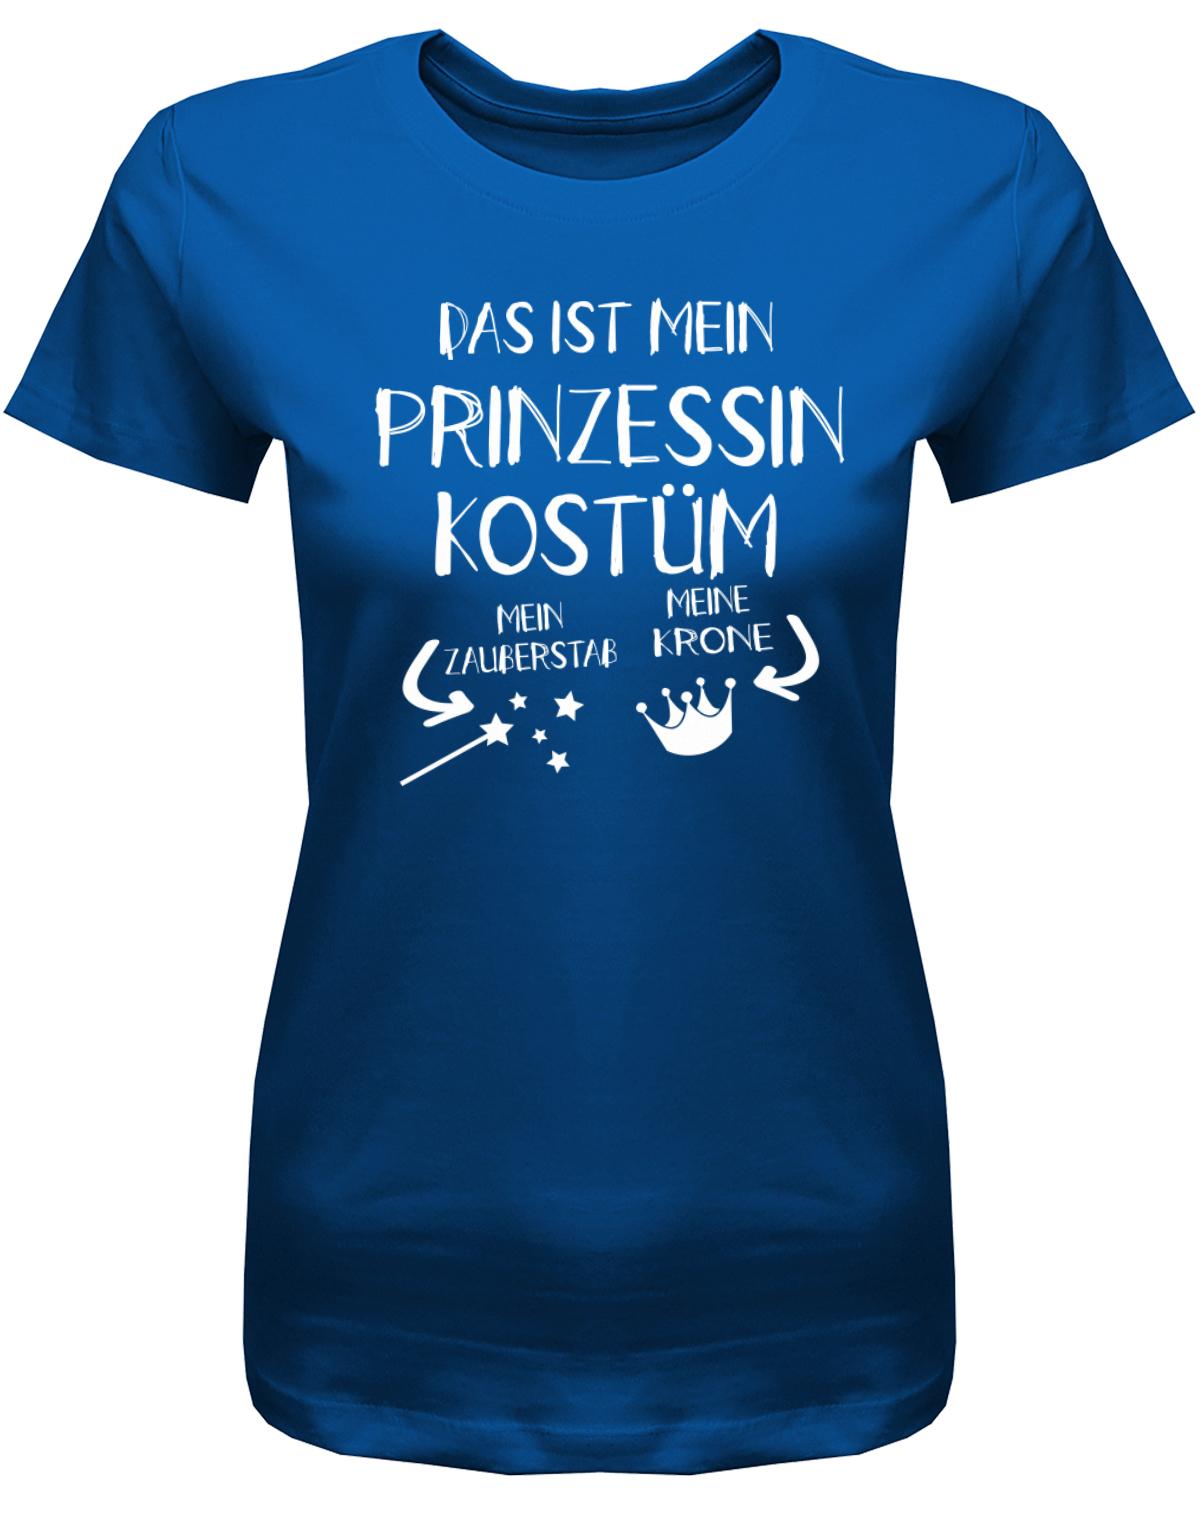 Das-ist-mein-Prinzessin-Kost-m-Fasching-Karneval-verkleidung-Shirt-Damen-Royalblau